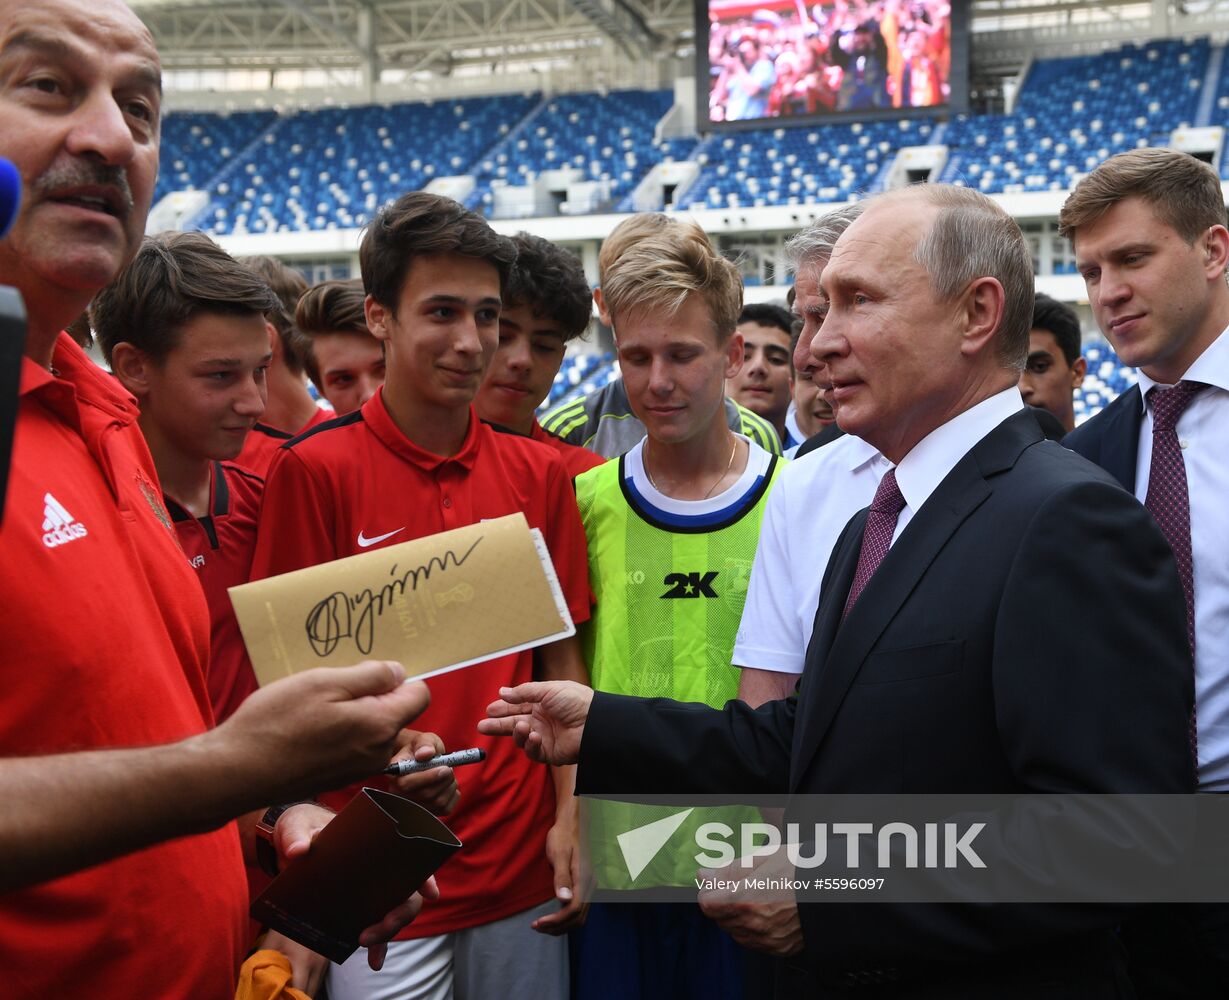 President Vladimir Putin's working trip to Kaliningrad